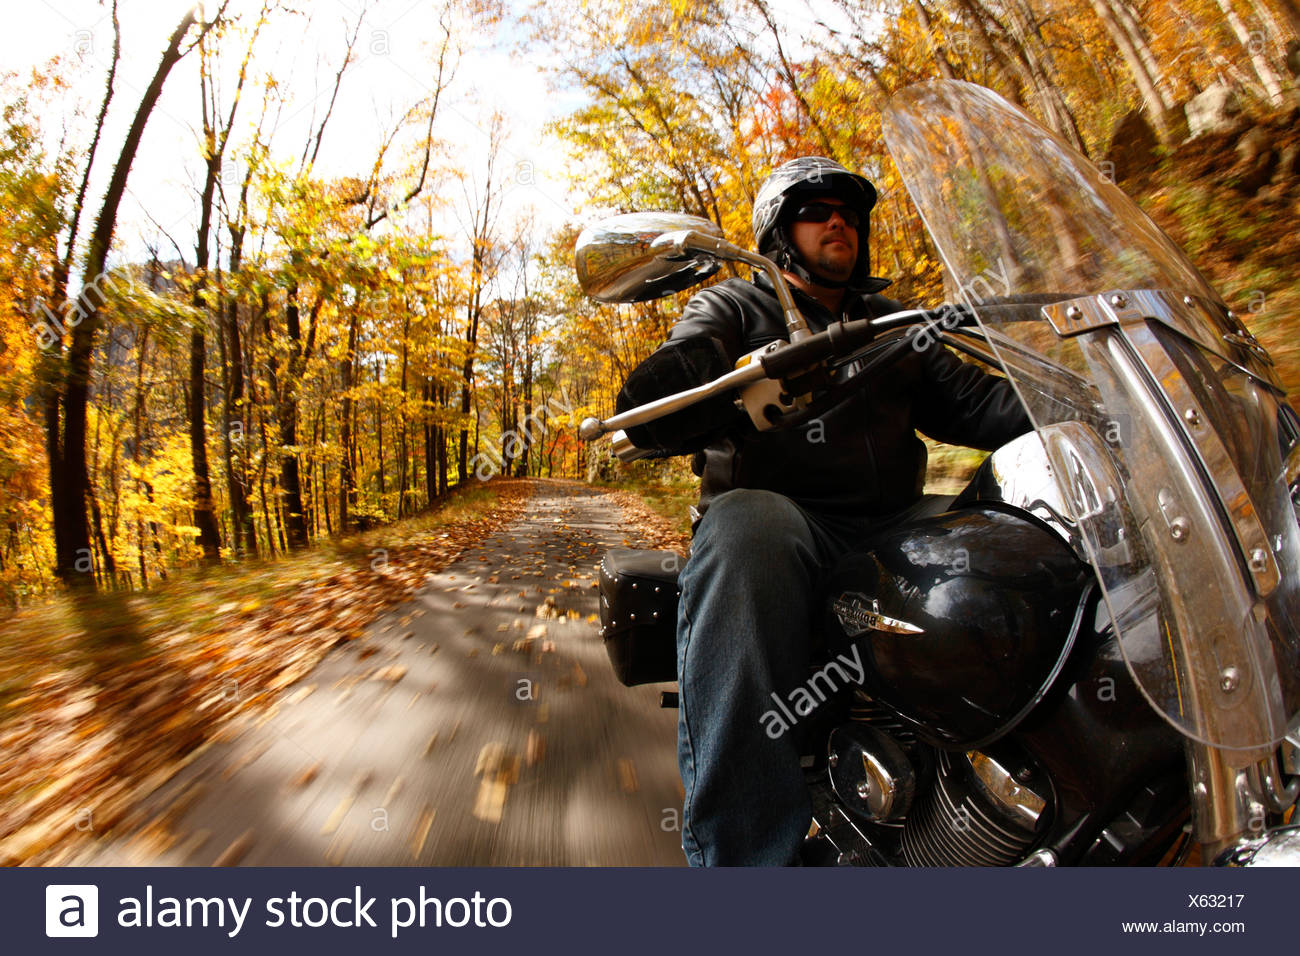 POV Aufnahme von Motorrad fahren im Herbst Stockfotografie - Alamy